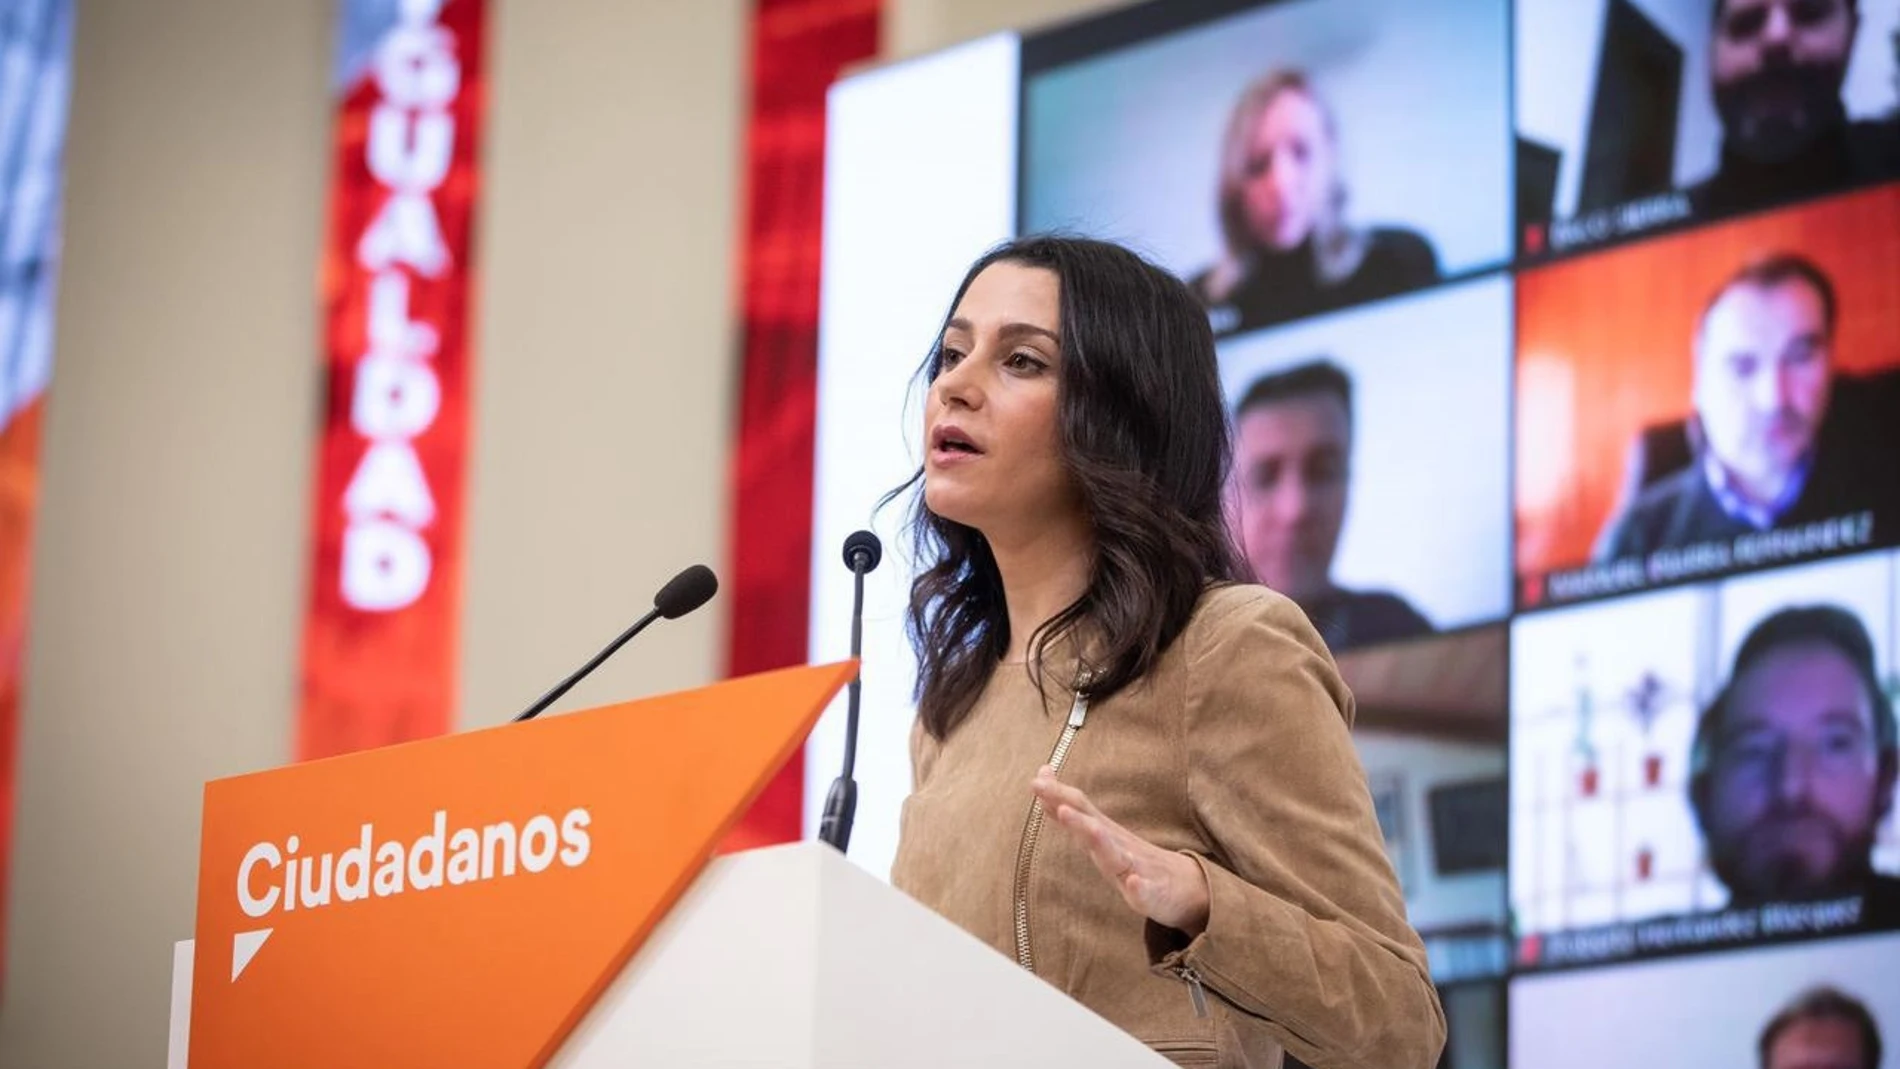 La presidenta de Ciudadanos, Inés Arrimadas, en una intervención en la sede de su partido en Madrid